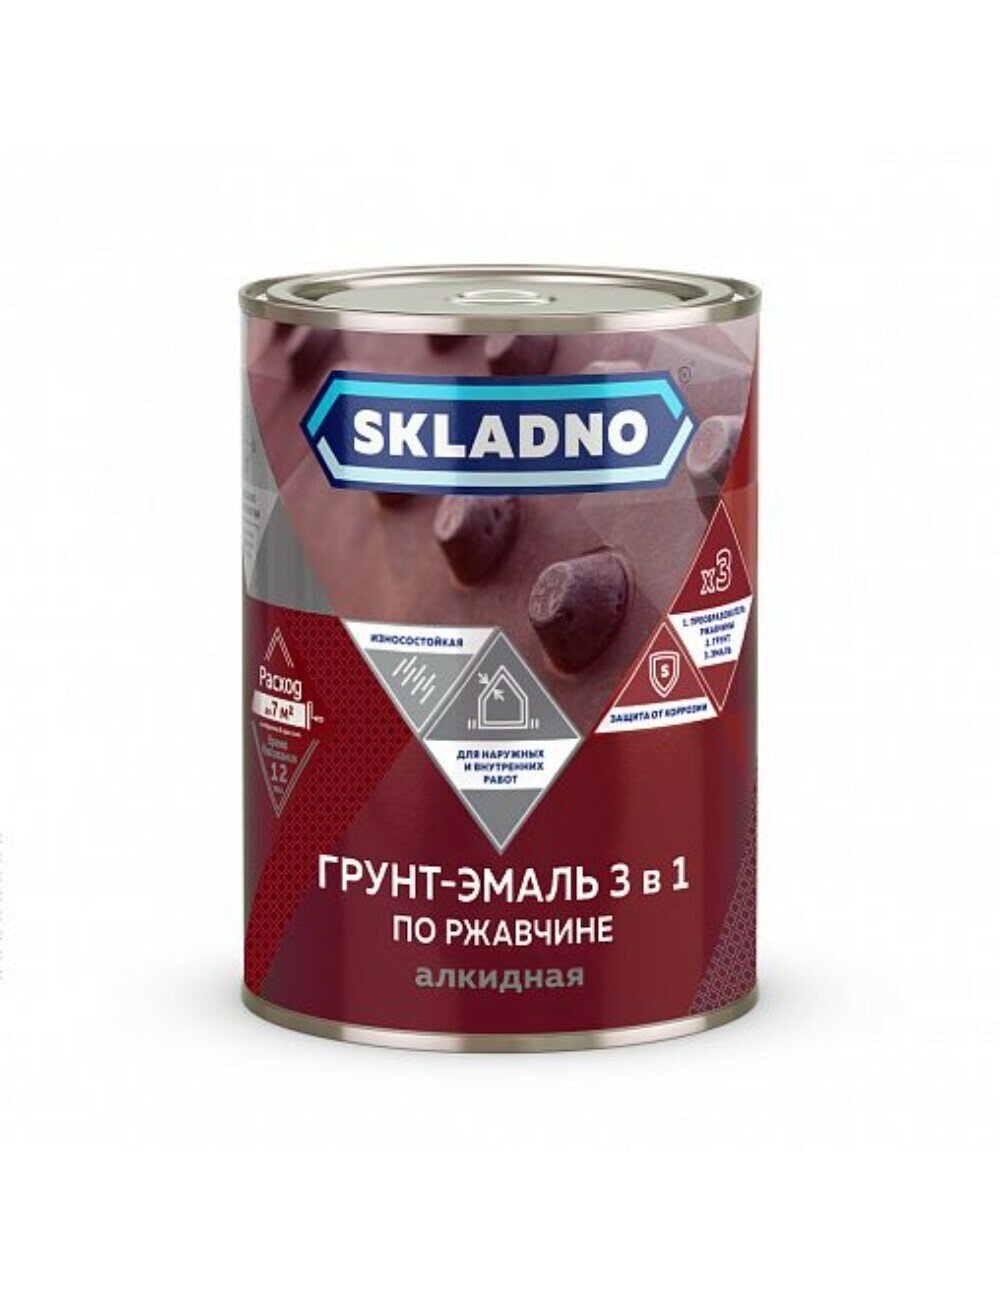 Грунт-эмаль по ржавчине Skladno, 3 в 1, красно-коричневая, 0,8 кг